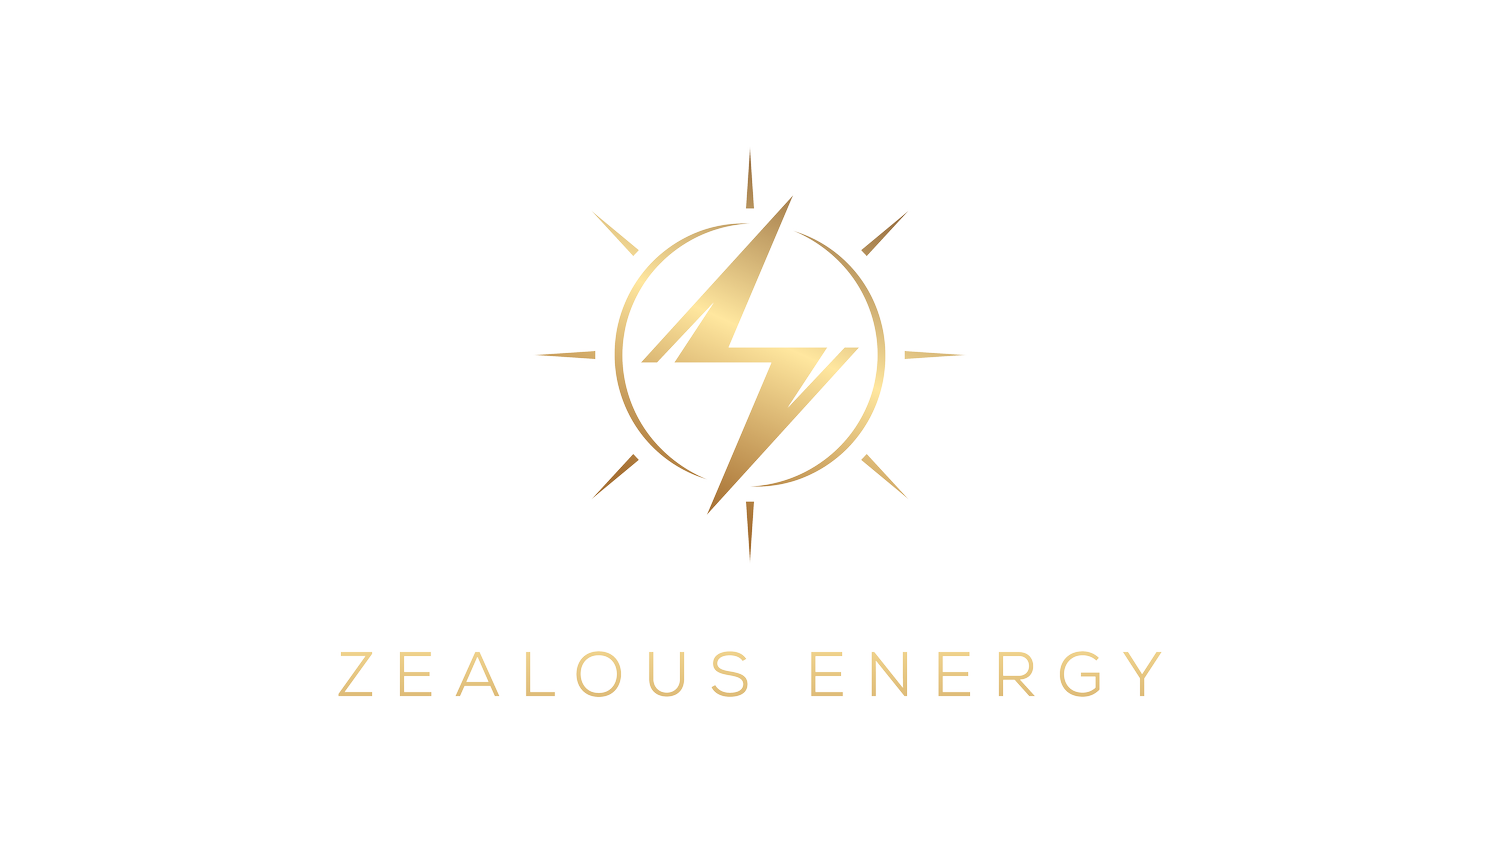 Zealous Energy Group